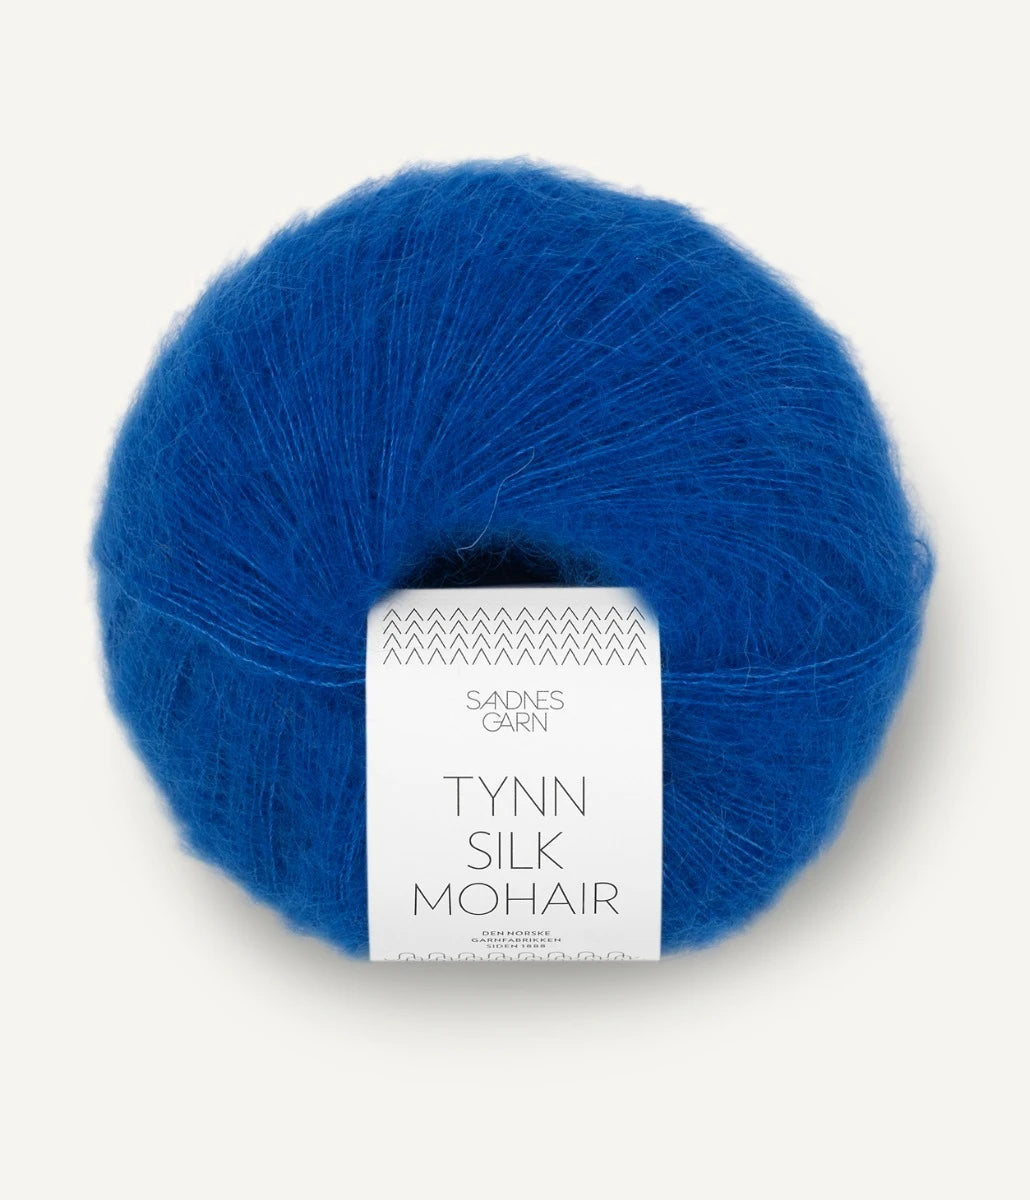 Kuvassa on Sandnes Garn Tynn Silk Mohair -lanka (yarn) värissä Jolly Blue.